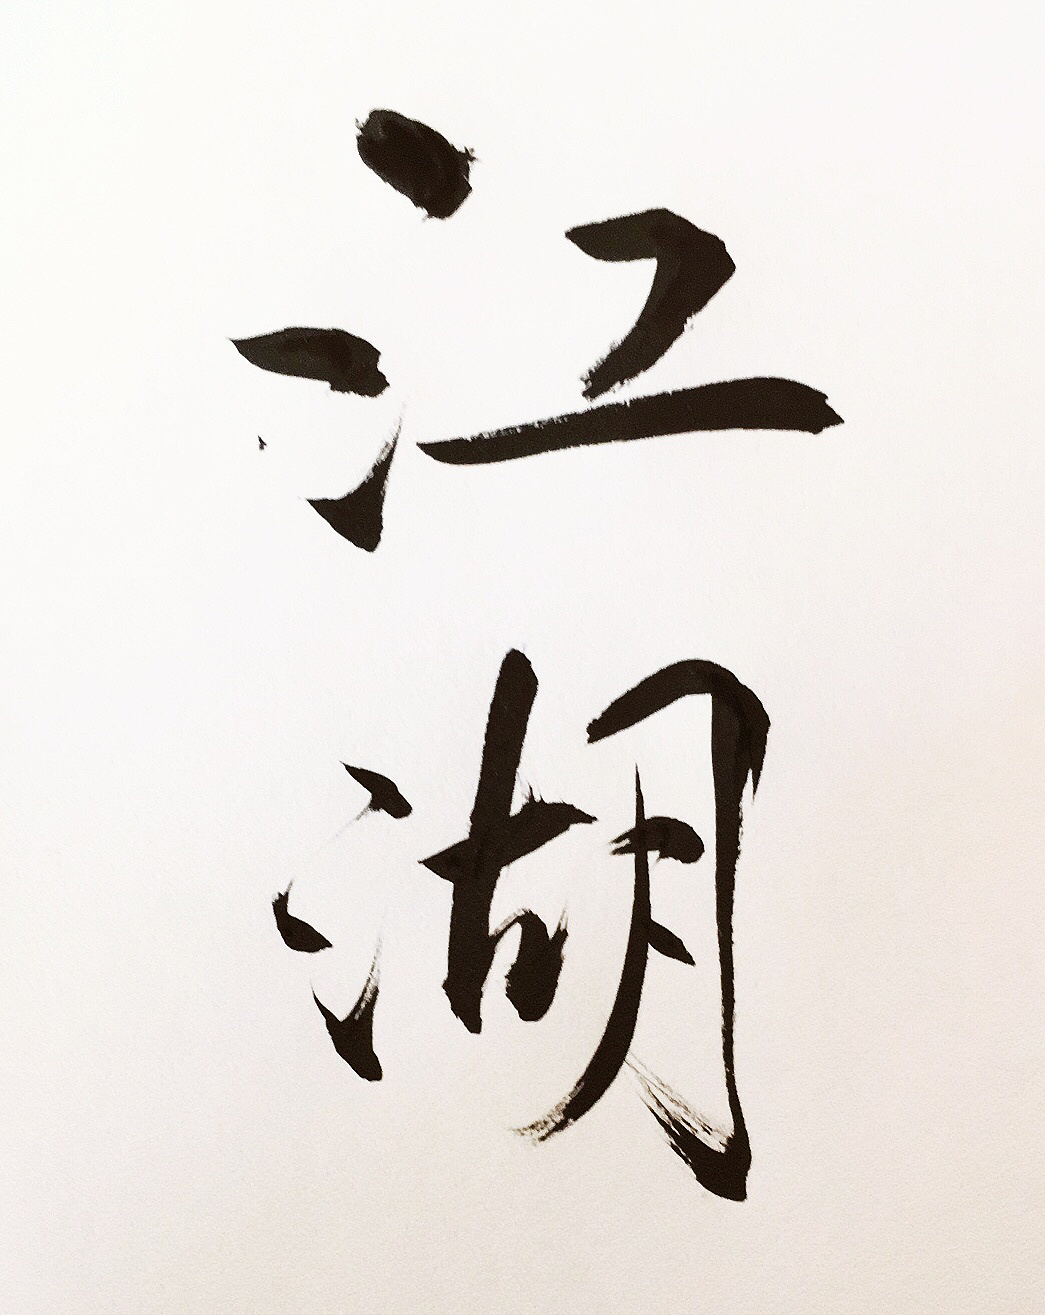 人情世故图片带字壁纸,江湖就是人情世故壁纸(4) - 伤感说说吧